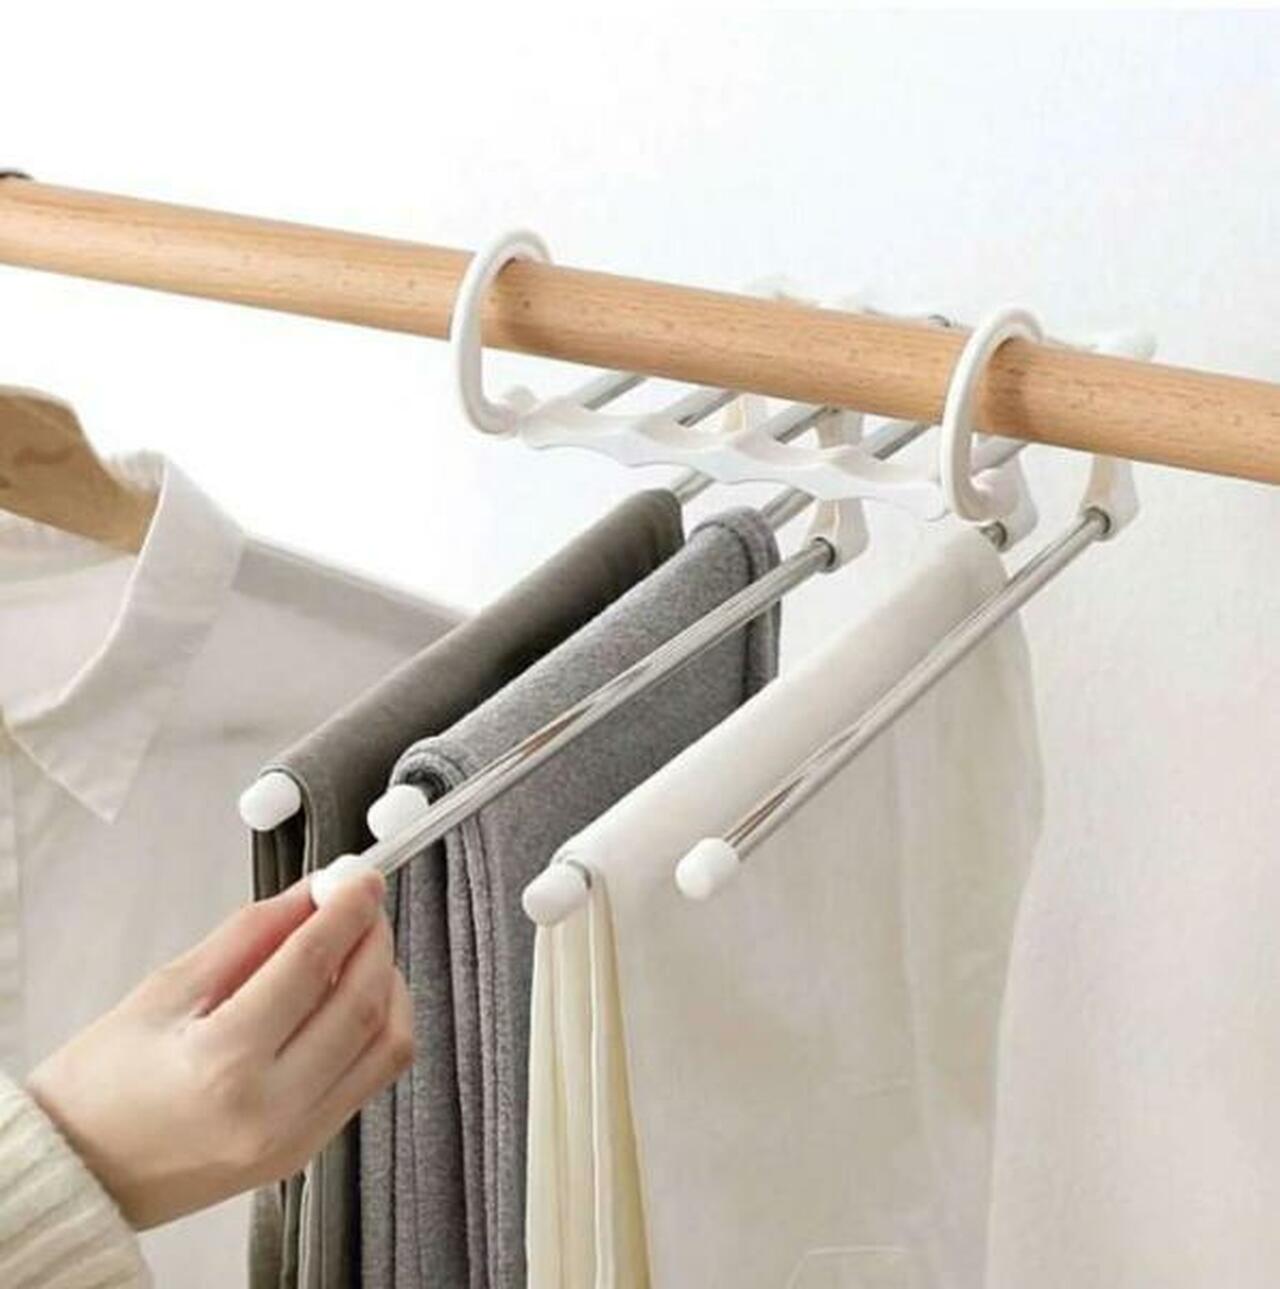 Abtonic Multifunctional Trouser Hangers